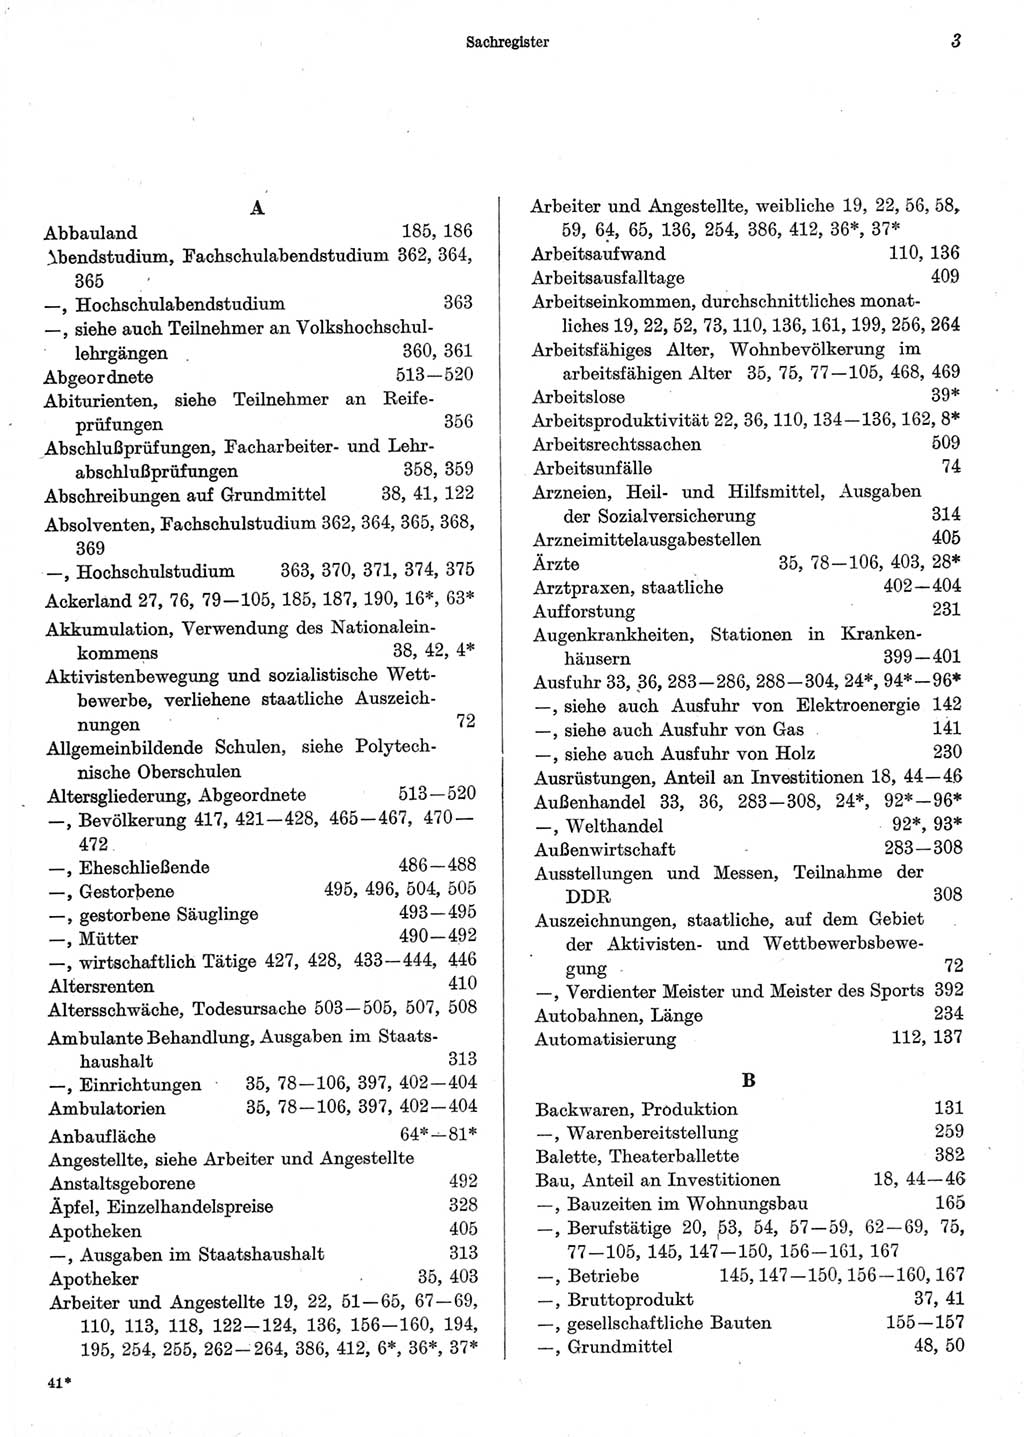 Statistisches Jahrbuch der Deutschen Demokratischen Republik (DDR) 1973, Seite 3 (Stat. Jb. DDR 1973, S. 3)